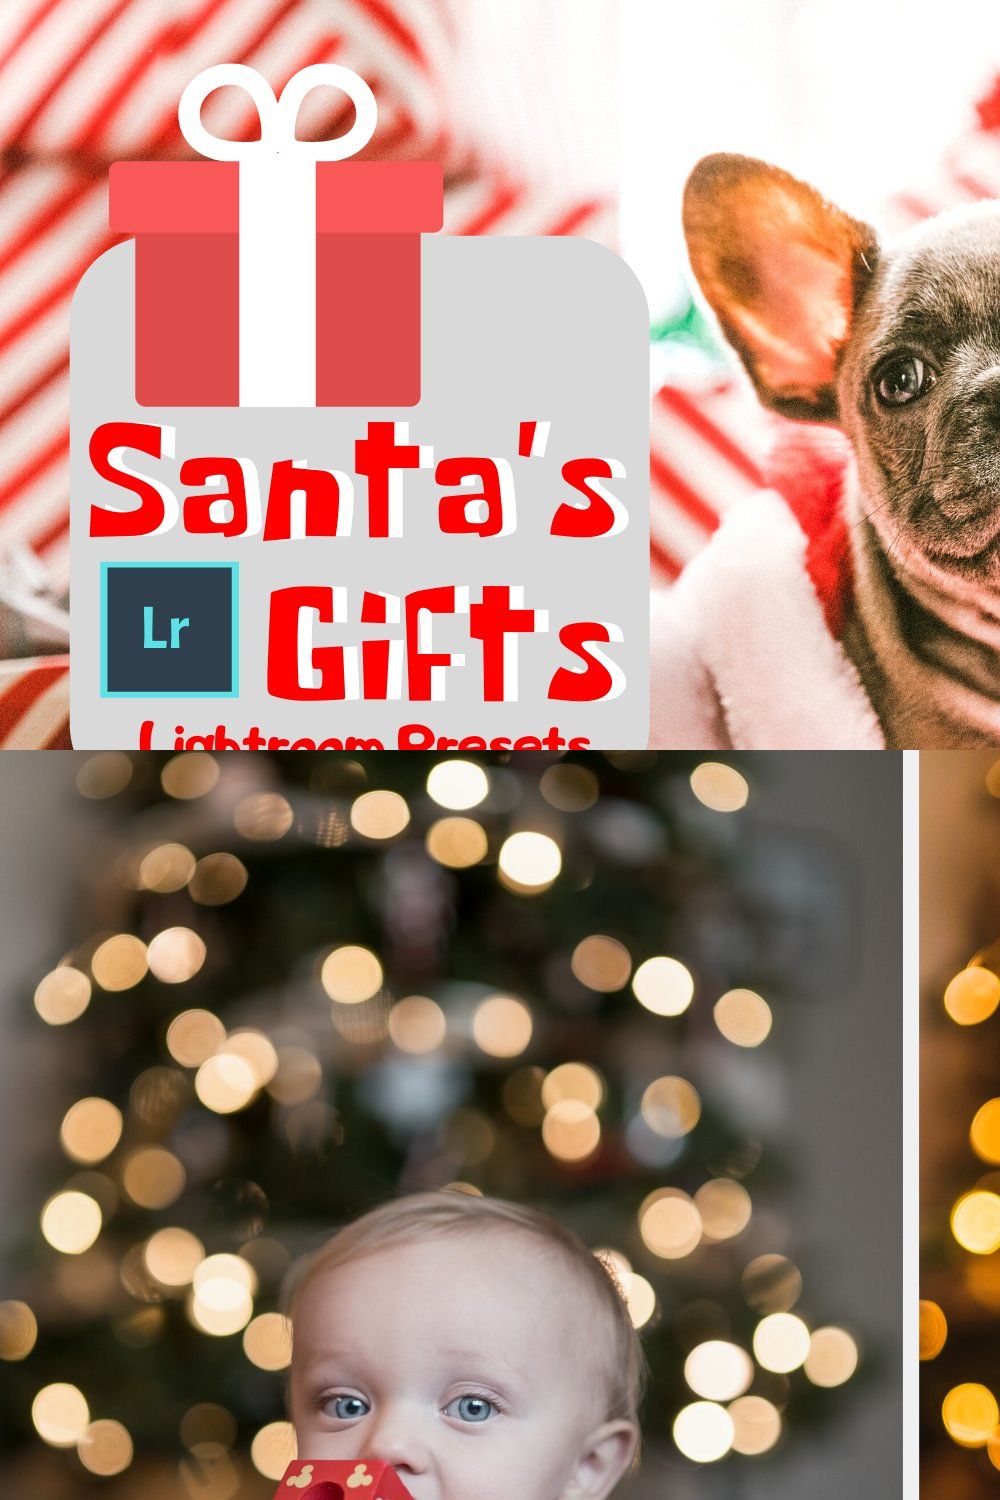 Santa's Gifts Lightroom Presets pinterest preview image.